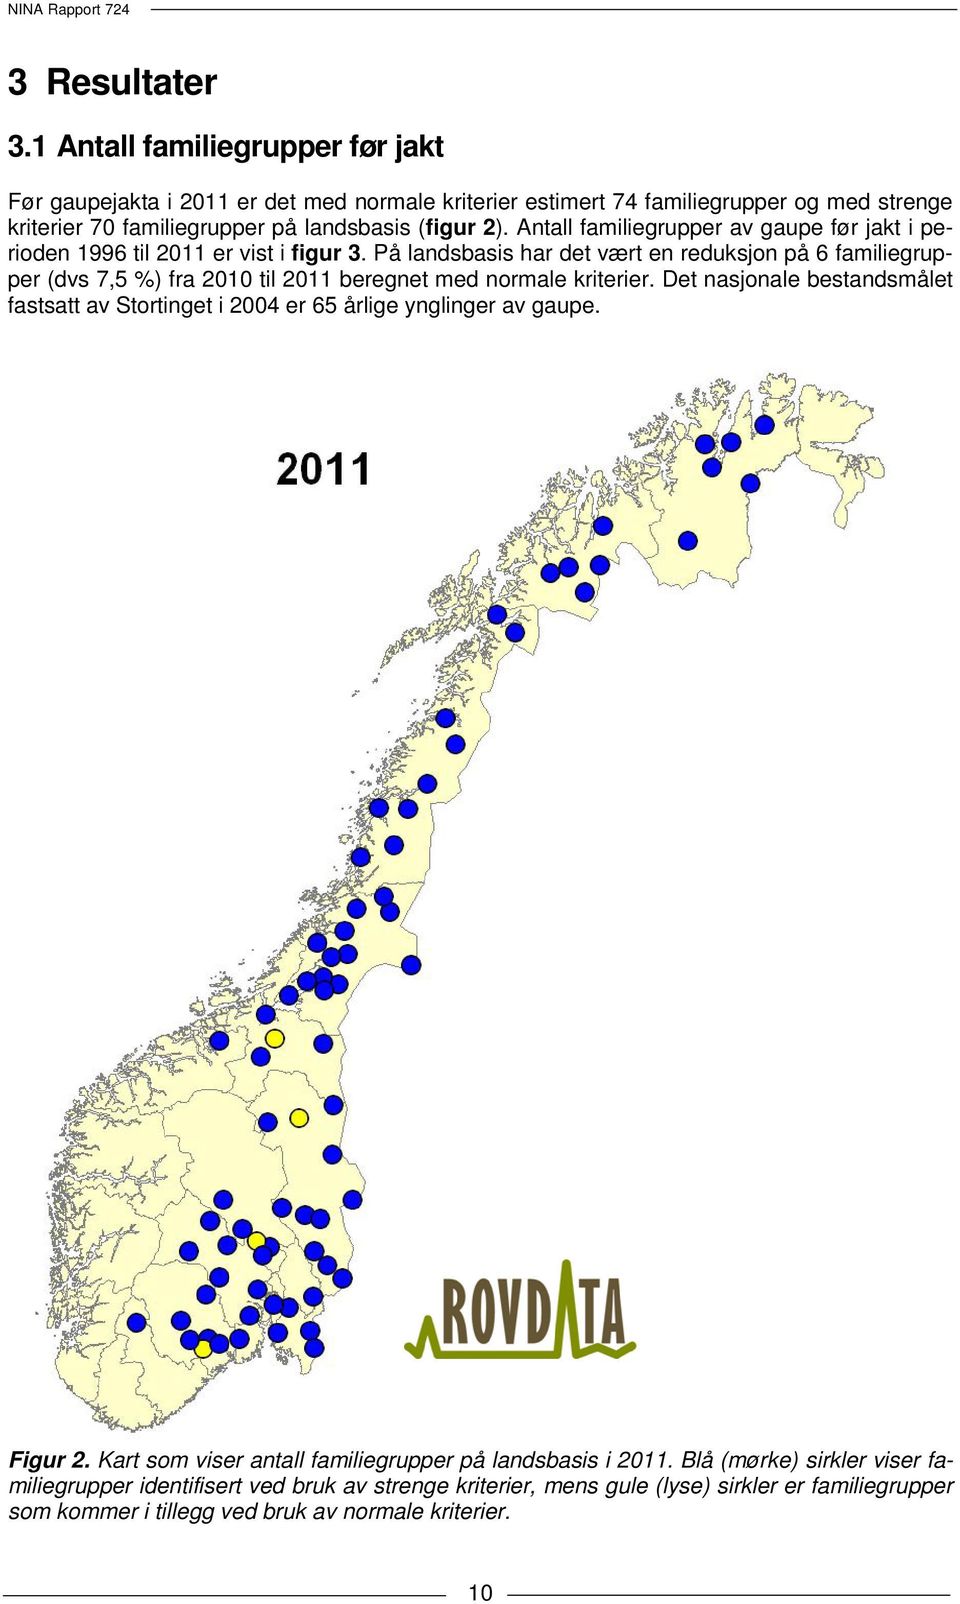 Antall familiegrupper av gaupe før jakt i perioden 1996 til 2011 er vist i figur 3.